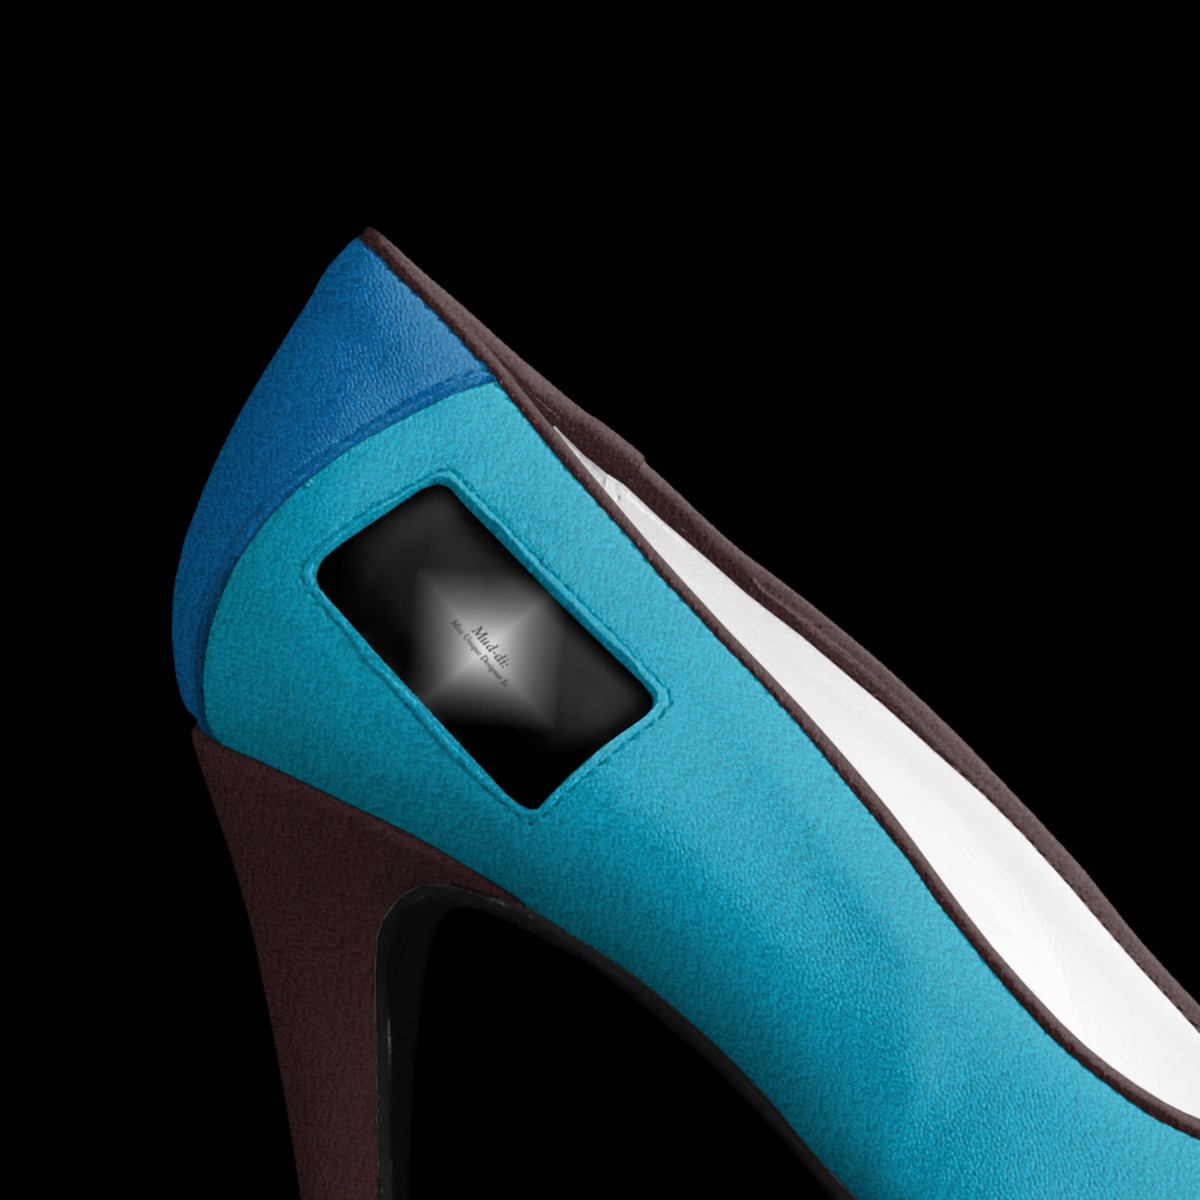 Unique Shoes for Women Story - ShoeTease Shoe Blog & Styling Services